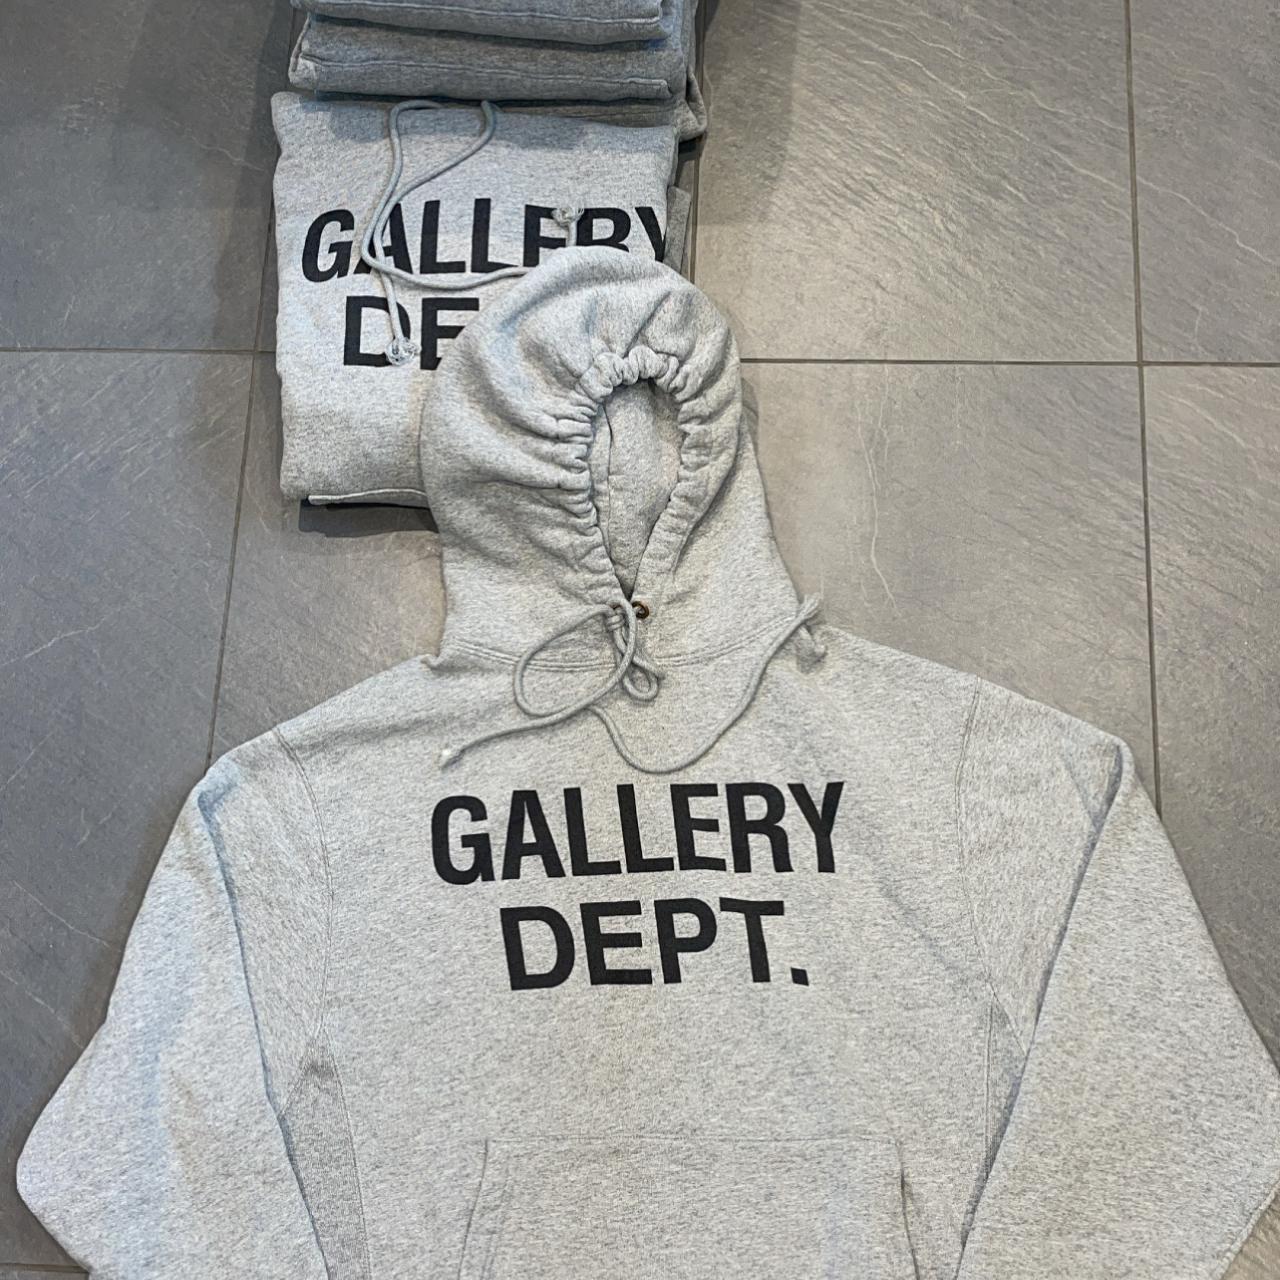 Gallery Dept Grey Hoodie. Sold out worldwide. - Depop